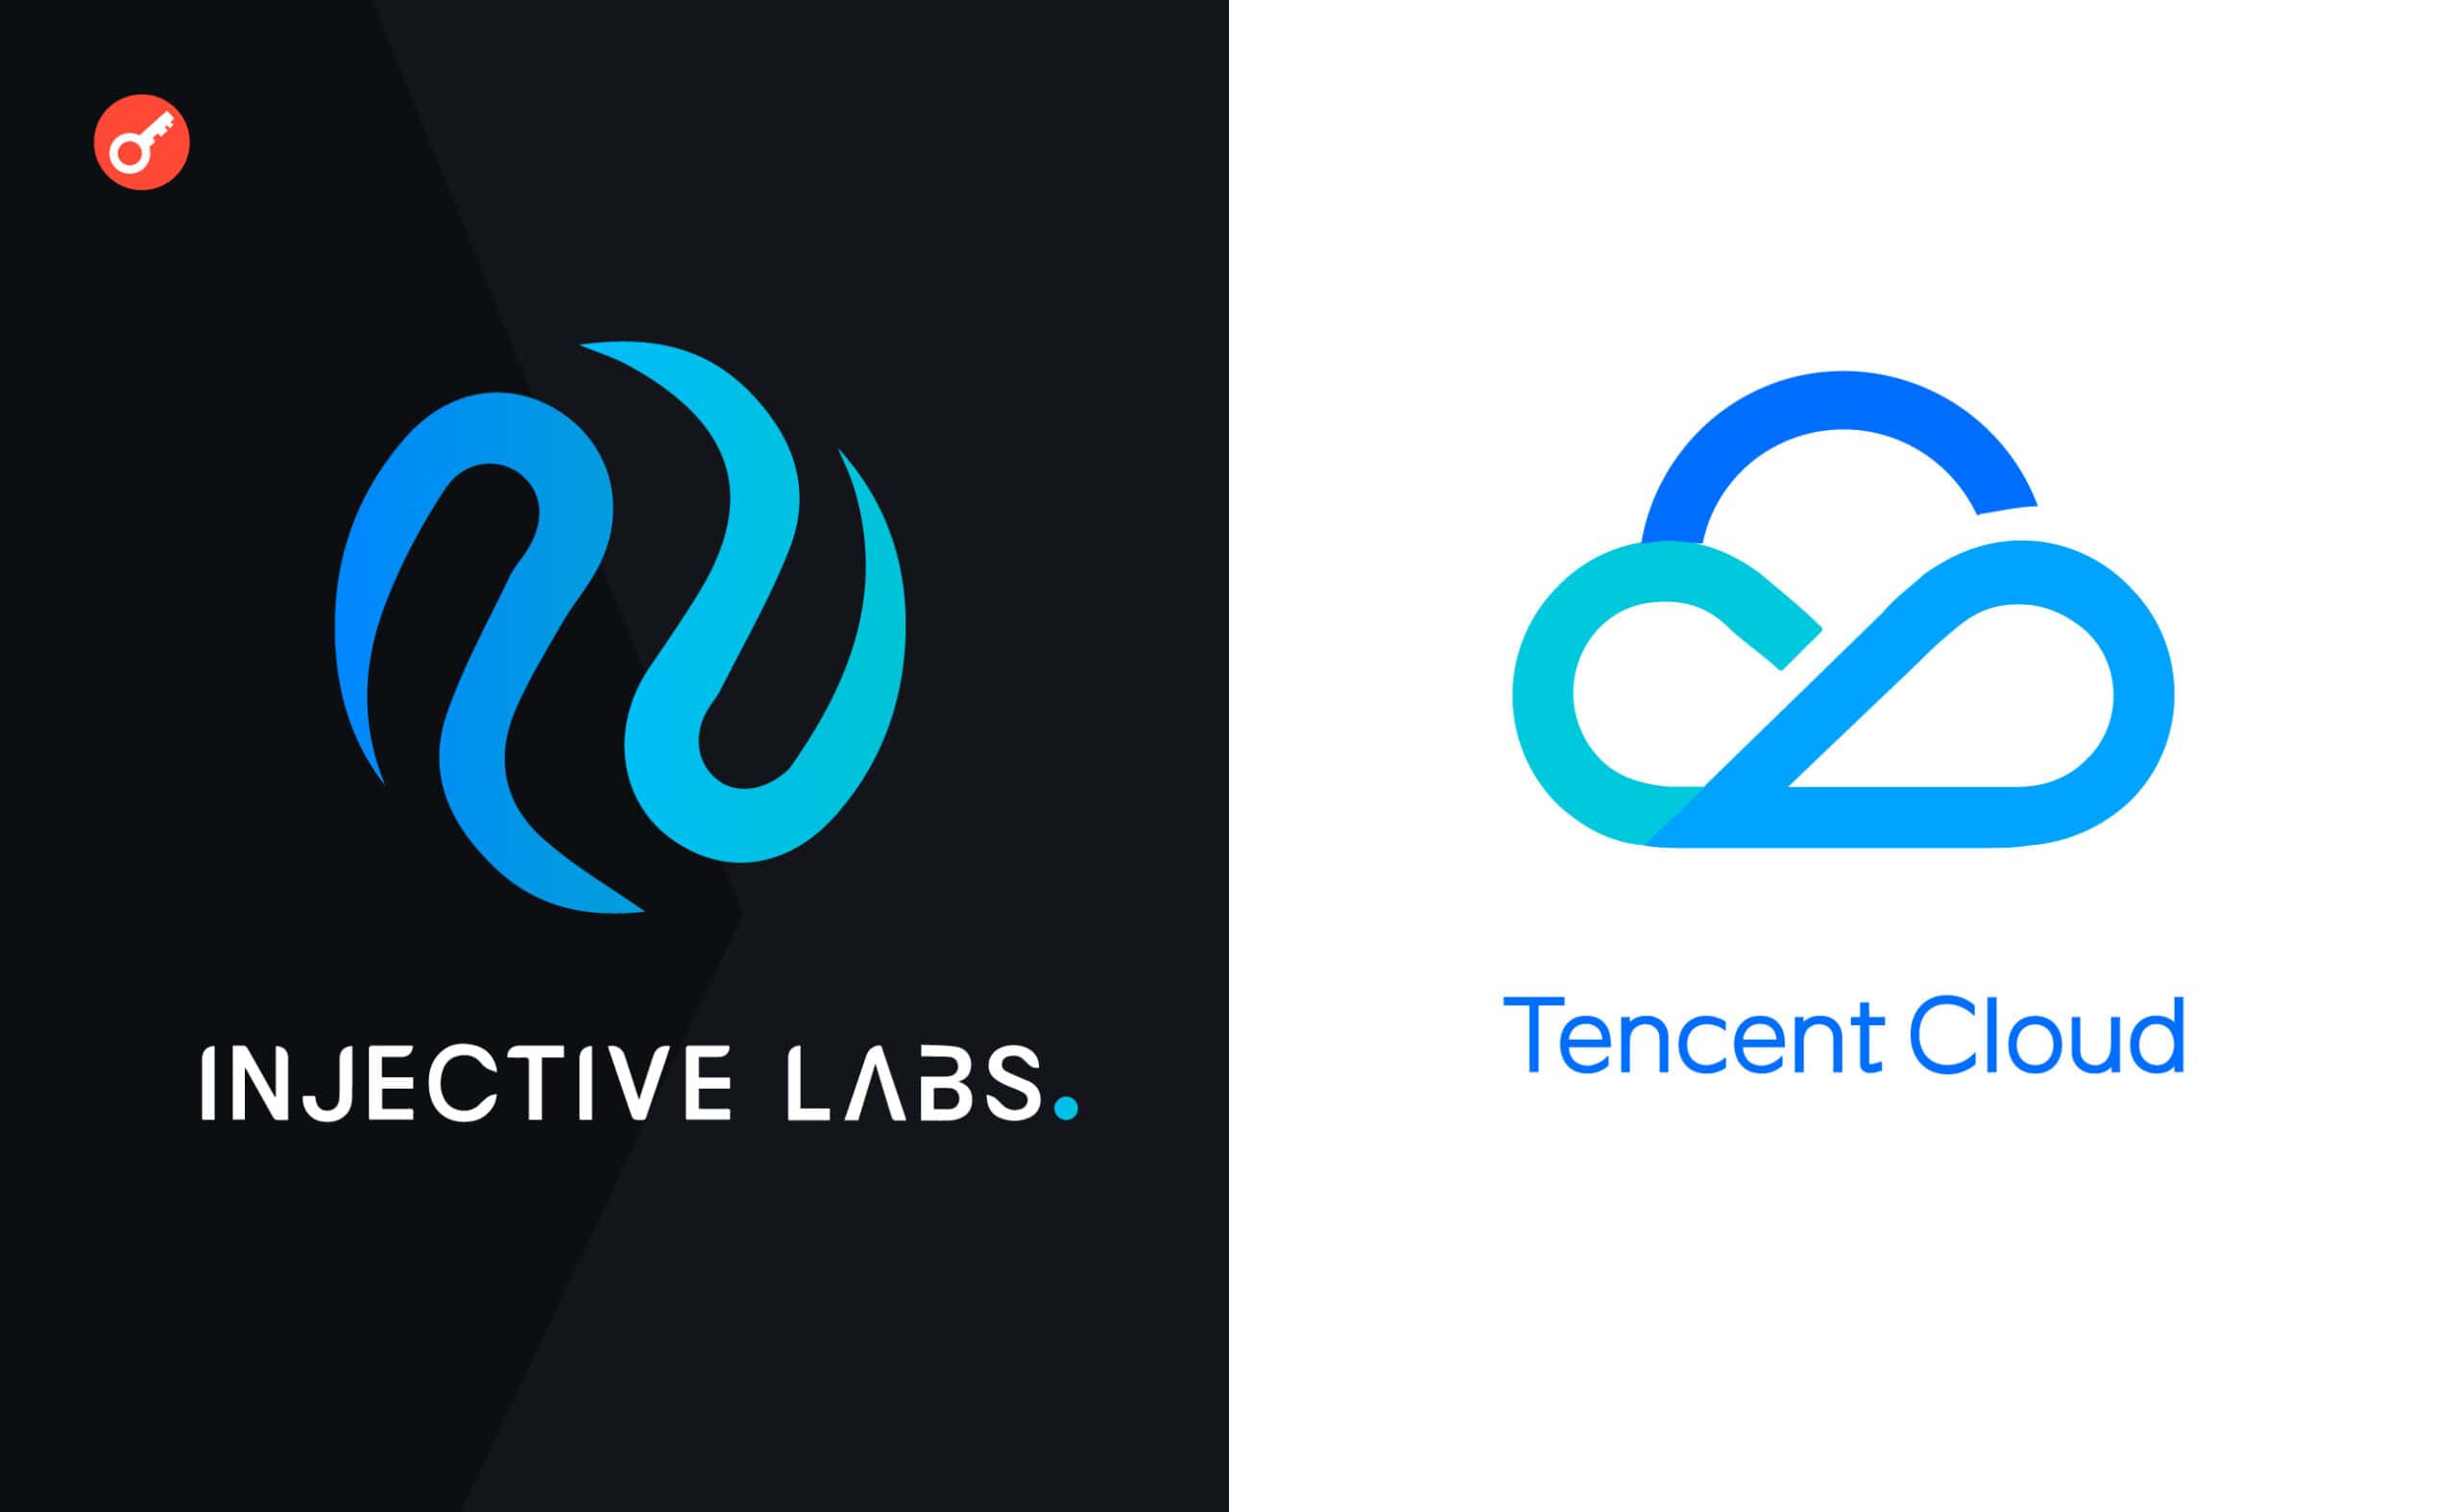 Техногигант Tencent Cloud начинает сотрудничество с Injective. Это долгосрочное партнерство в области поддержки разработчиков экосистемы блокчейна. 